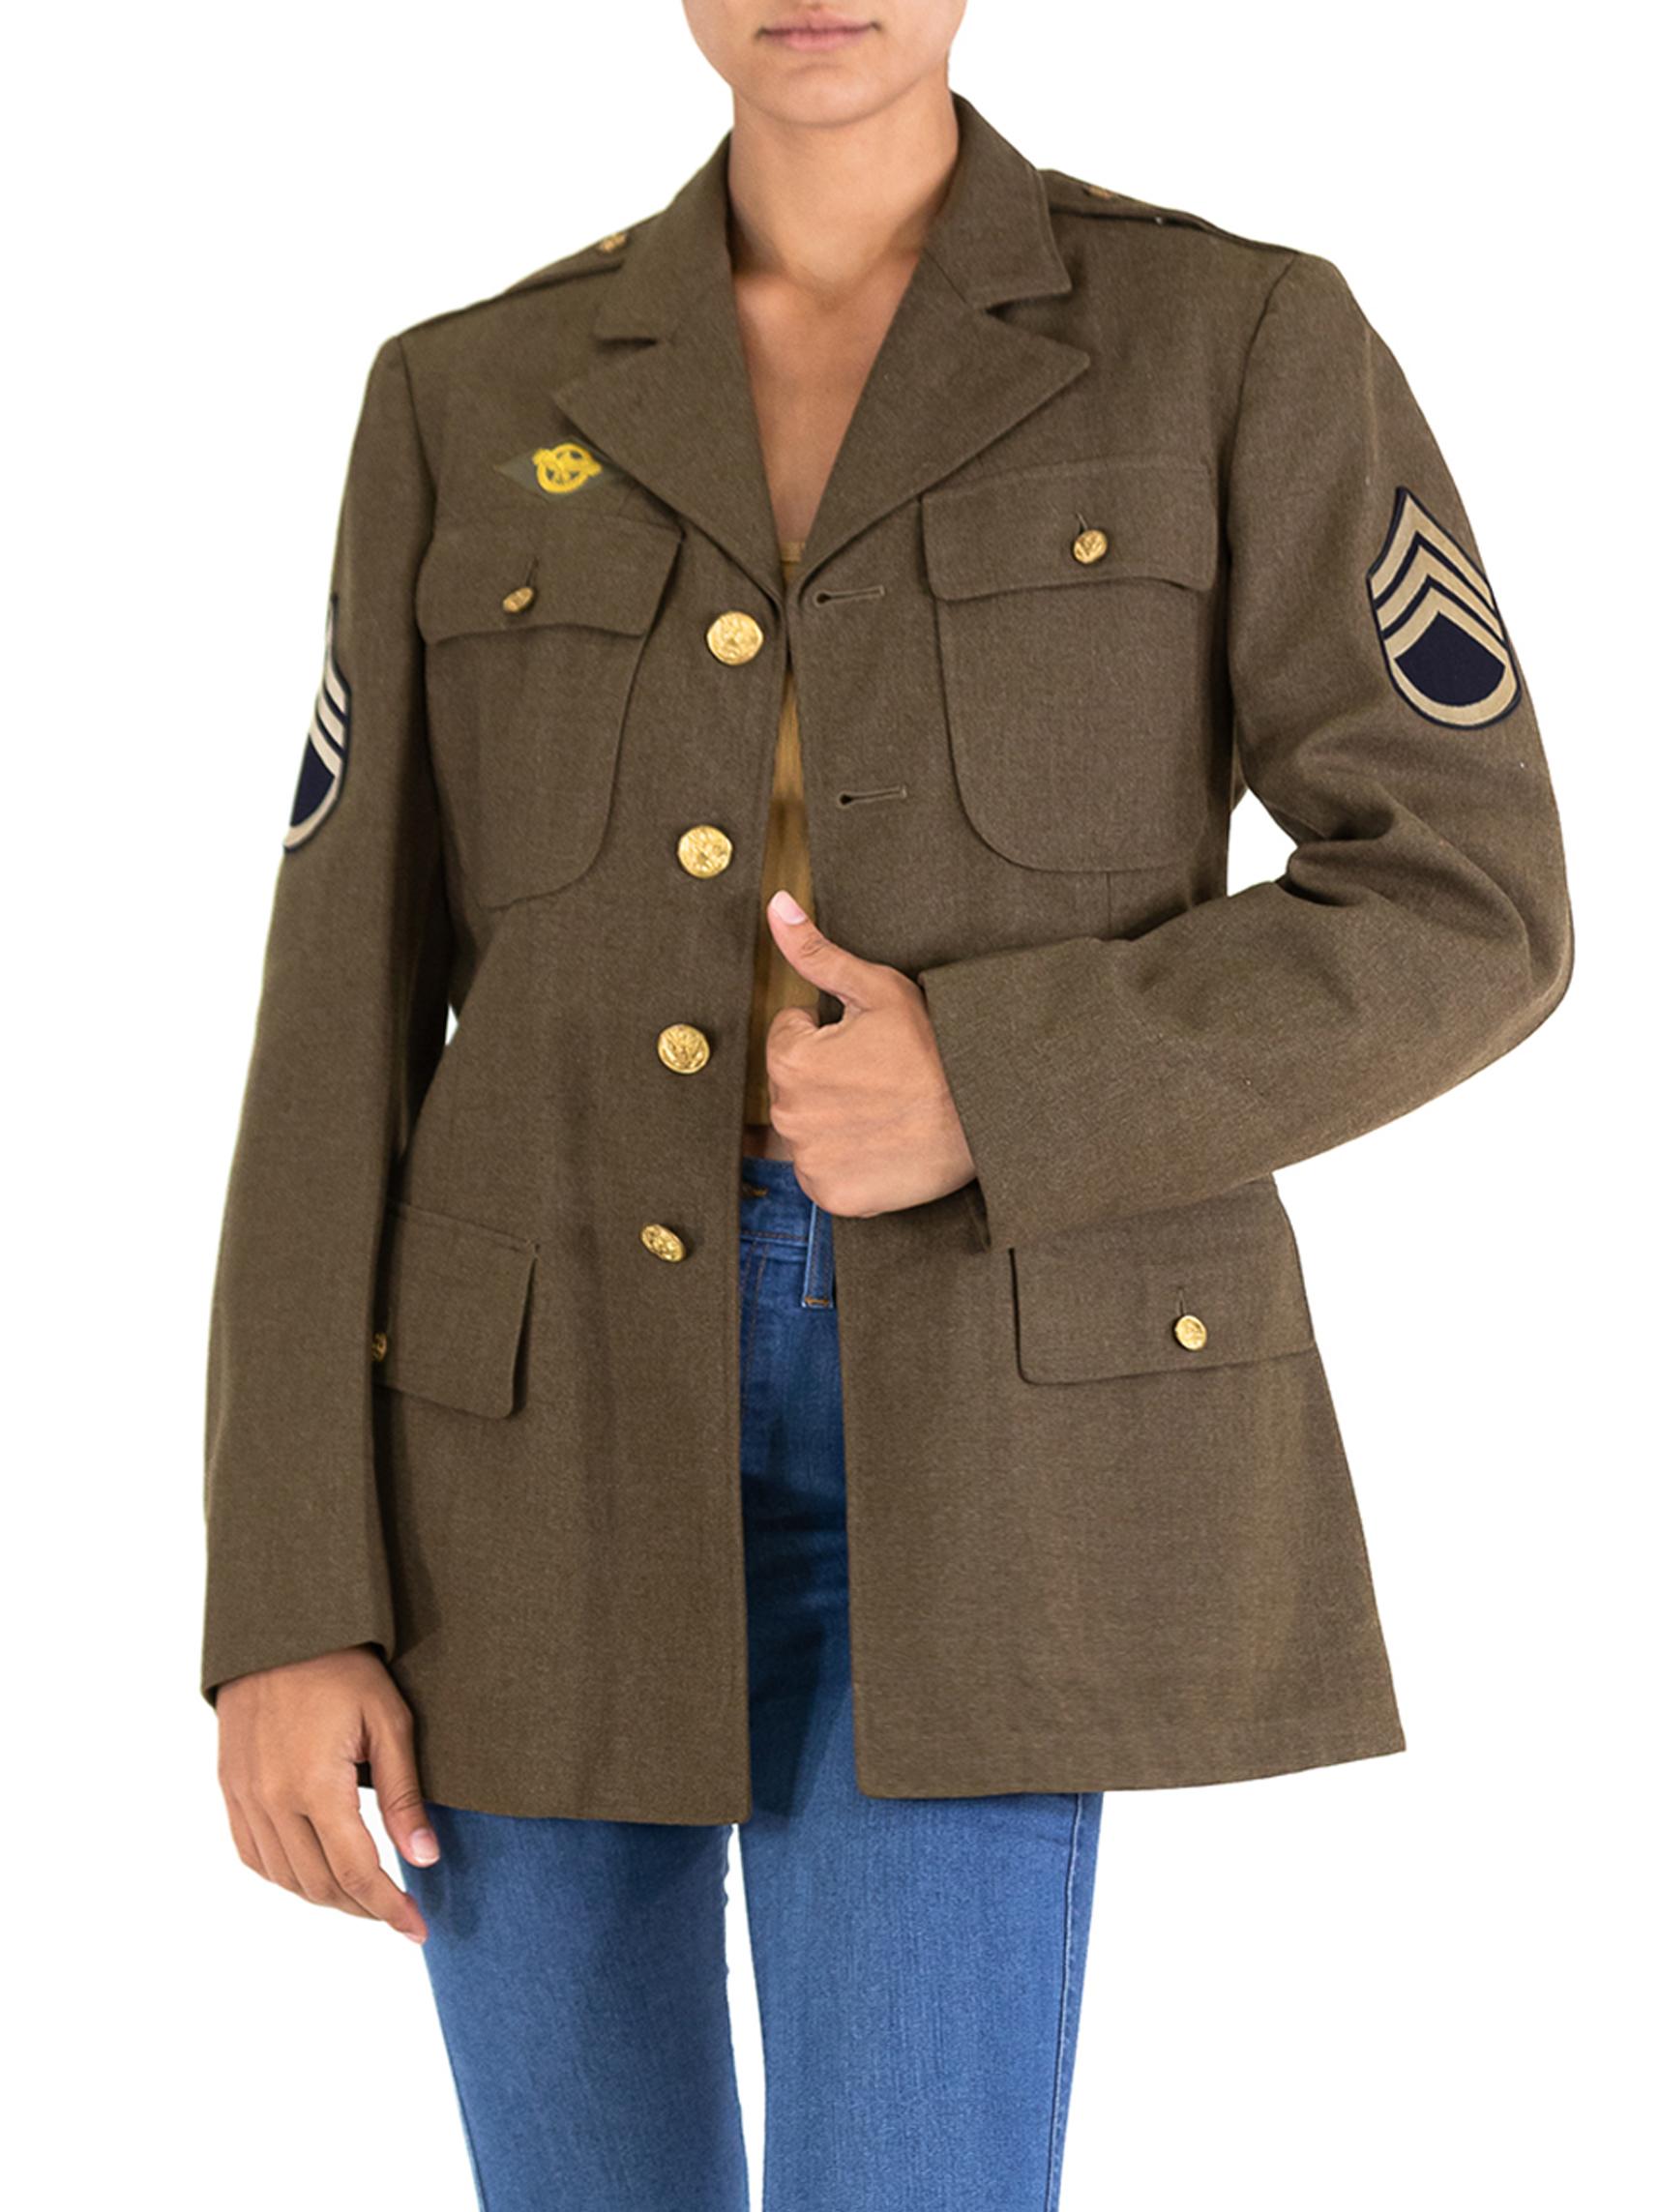 ww2 military jacket